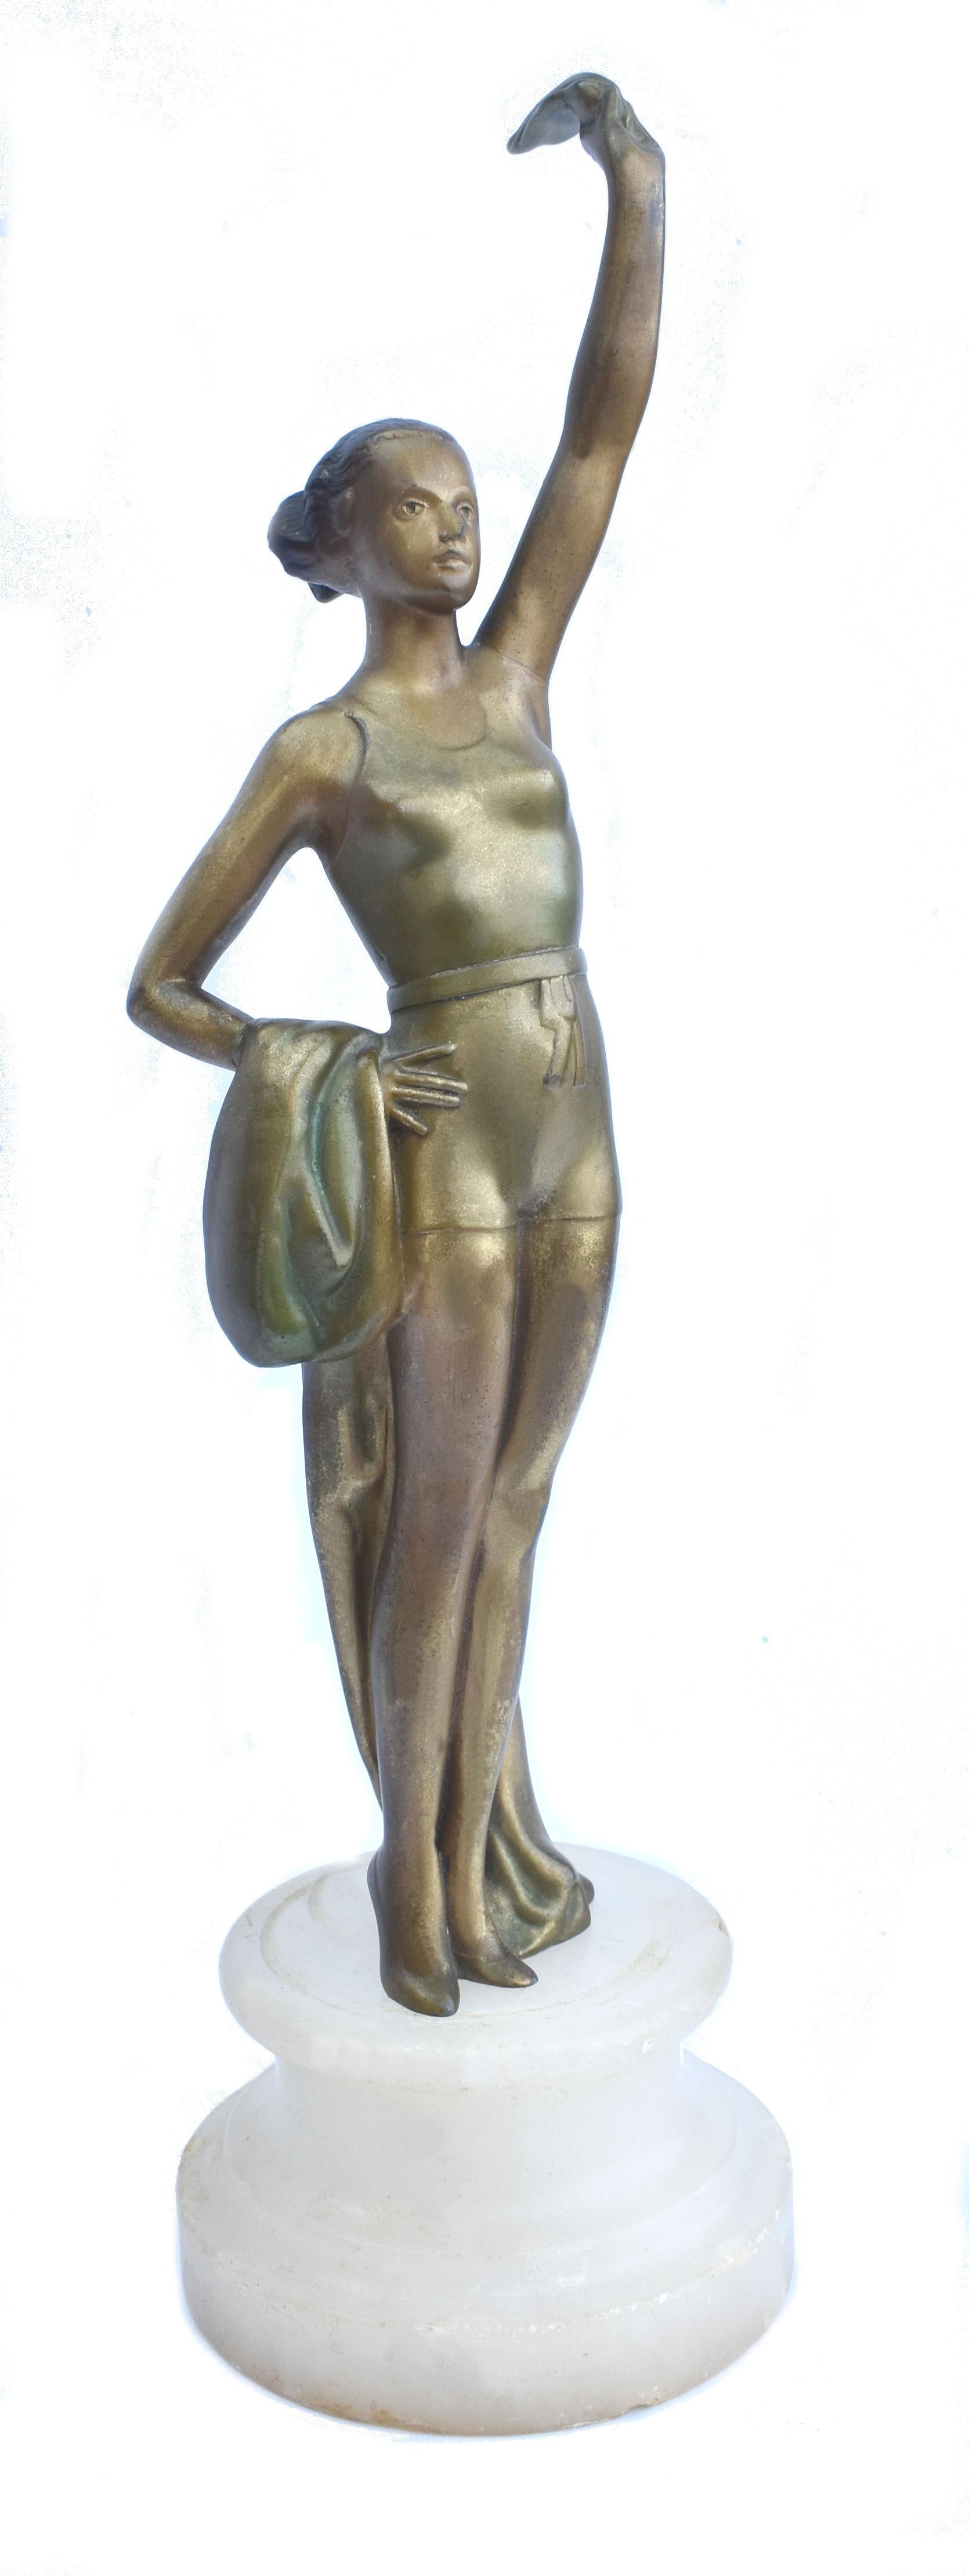 Nous vous proposons cette très belle figurine originale Art Déco en étain peint à froid représentant une nageuse tenant une grande plume dans sa main tendue et un châle/serviette drapé sur son autre bras. Elle a une hauteur impressionnante de 13